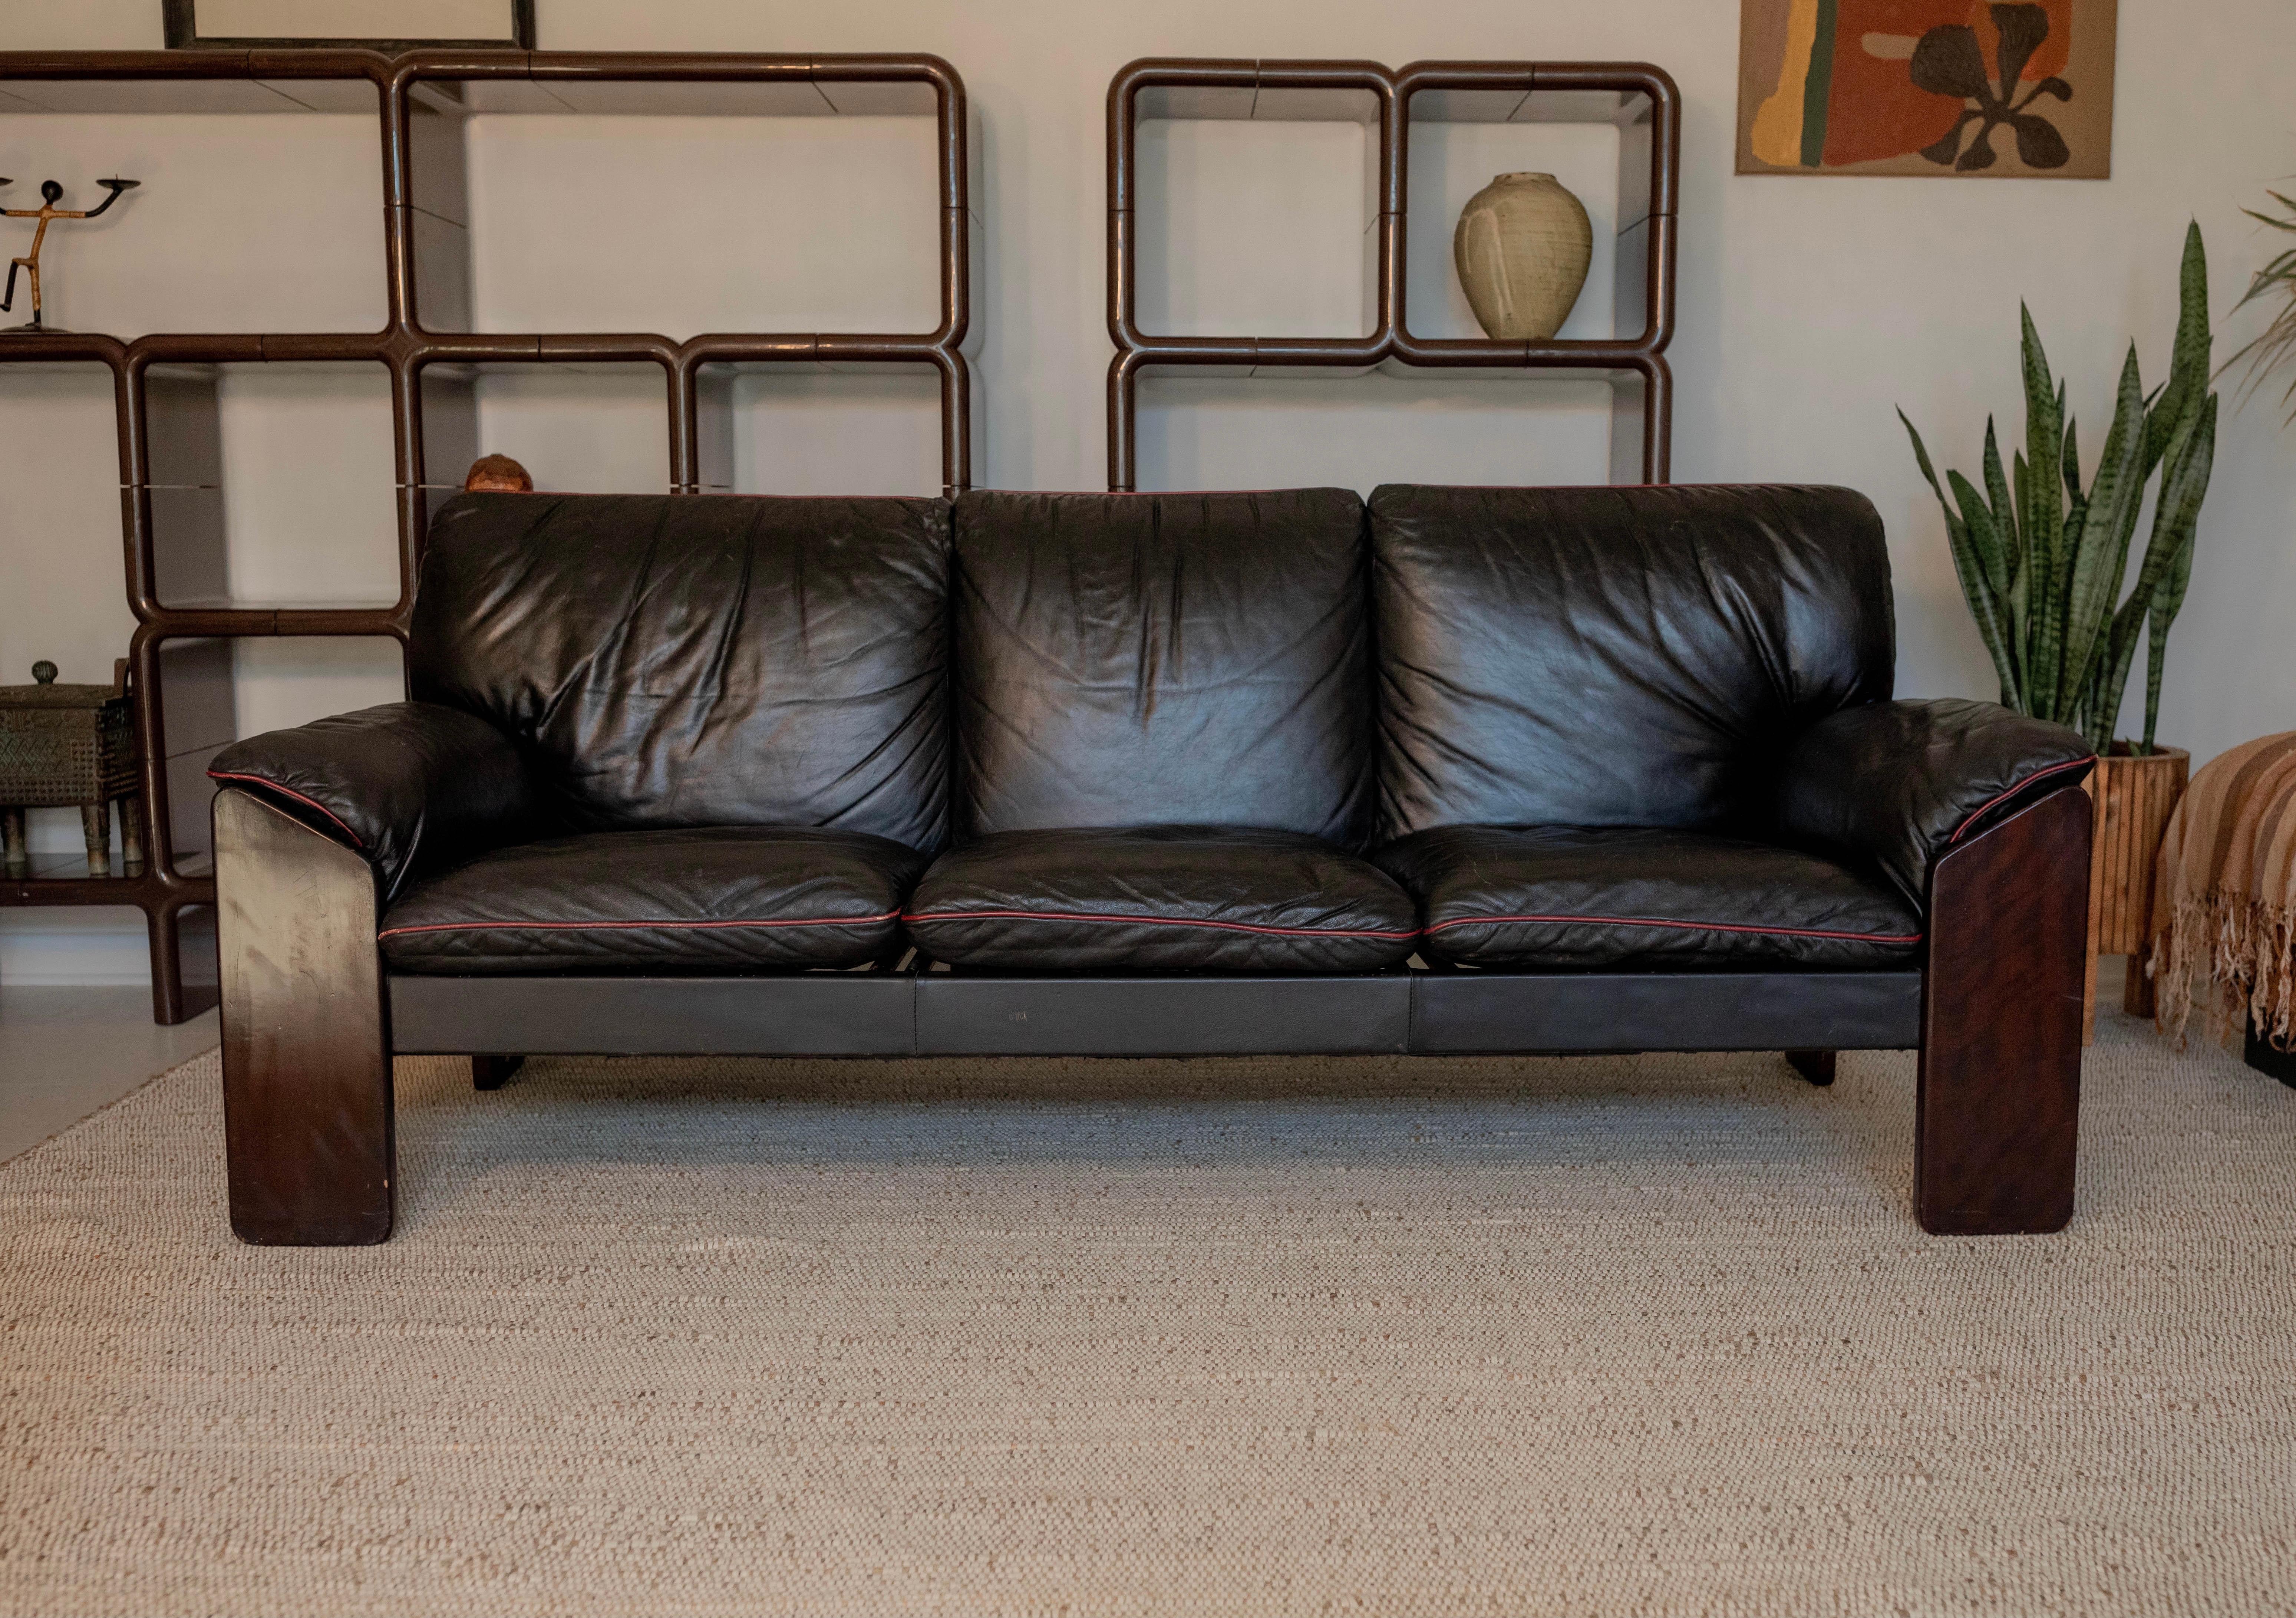 Dieses seltene brasilianische moderne Sofa wurde von Jean Gillon für Probel entworfen und verfügt über ein wunderschönes brasilianisches Jacaranda-Gestell mit sehr bequemen schwarzen Lederkissen und Armlehnen mit kontrastierenden sportlichen roten